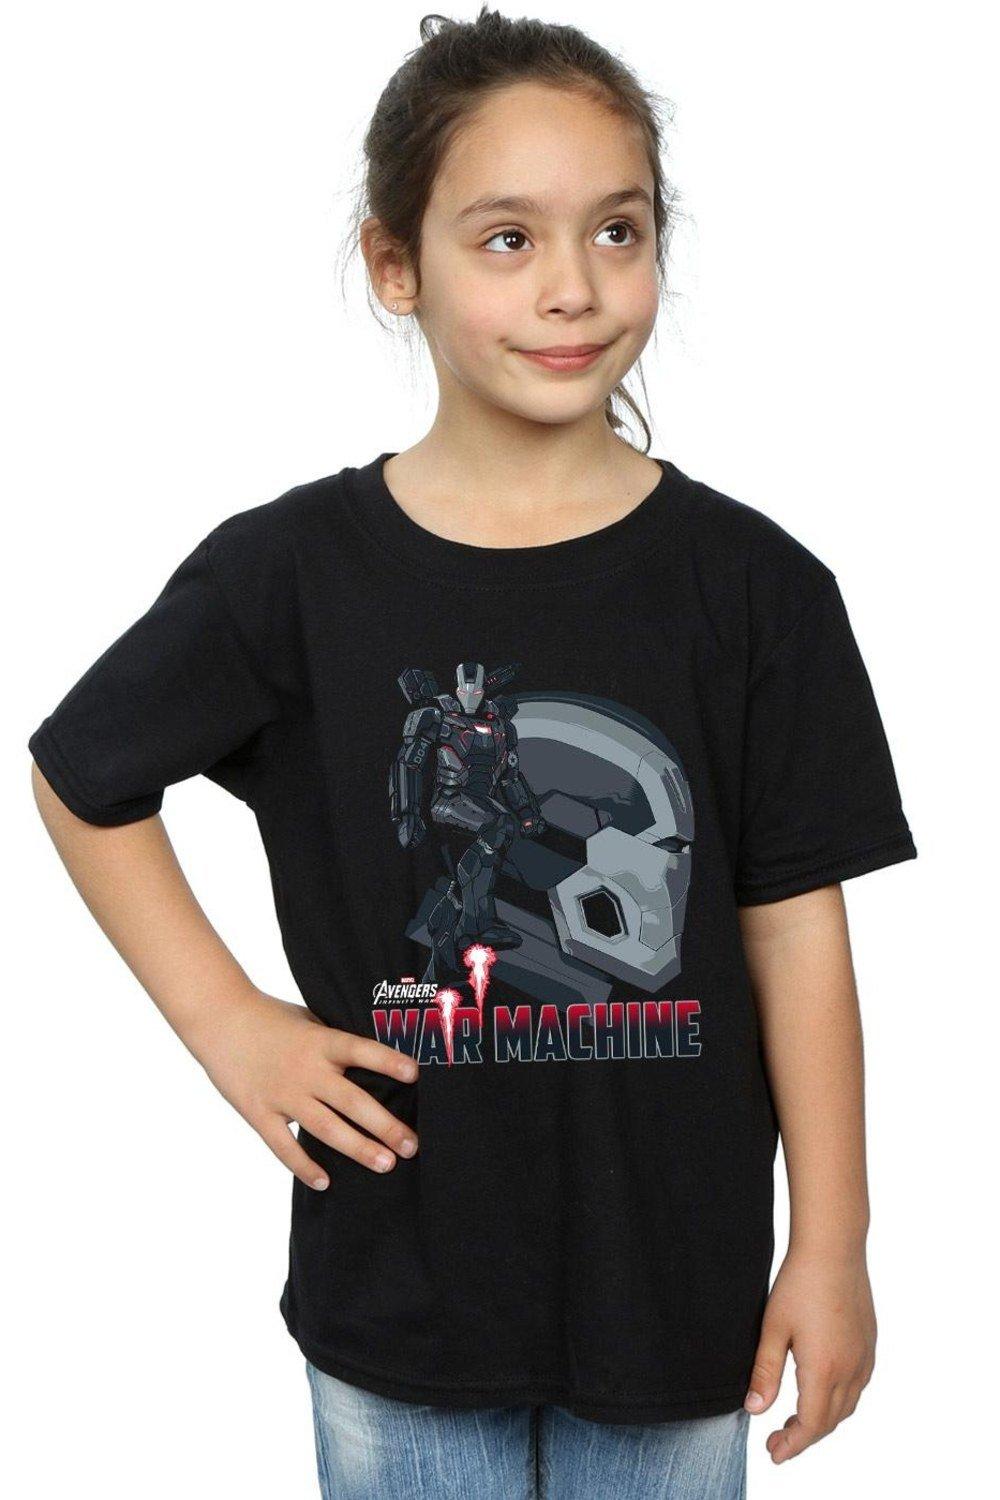 Avengers Infinity War War Machine Character Cotton T-Shirt